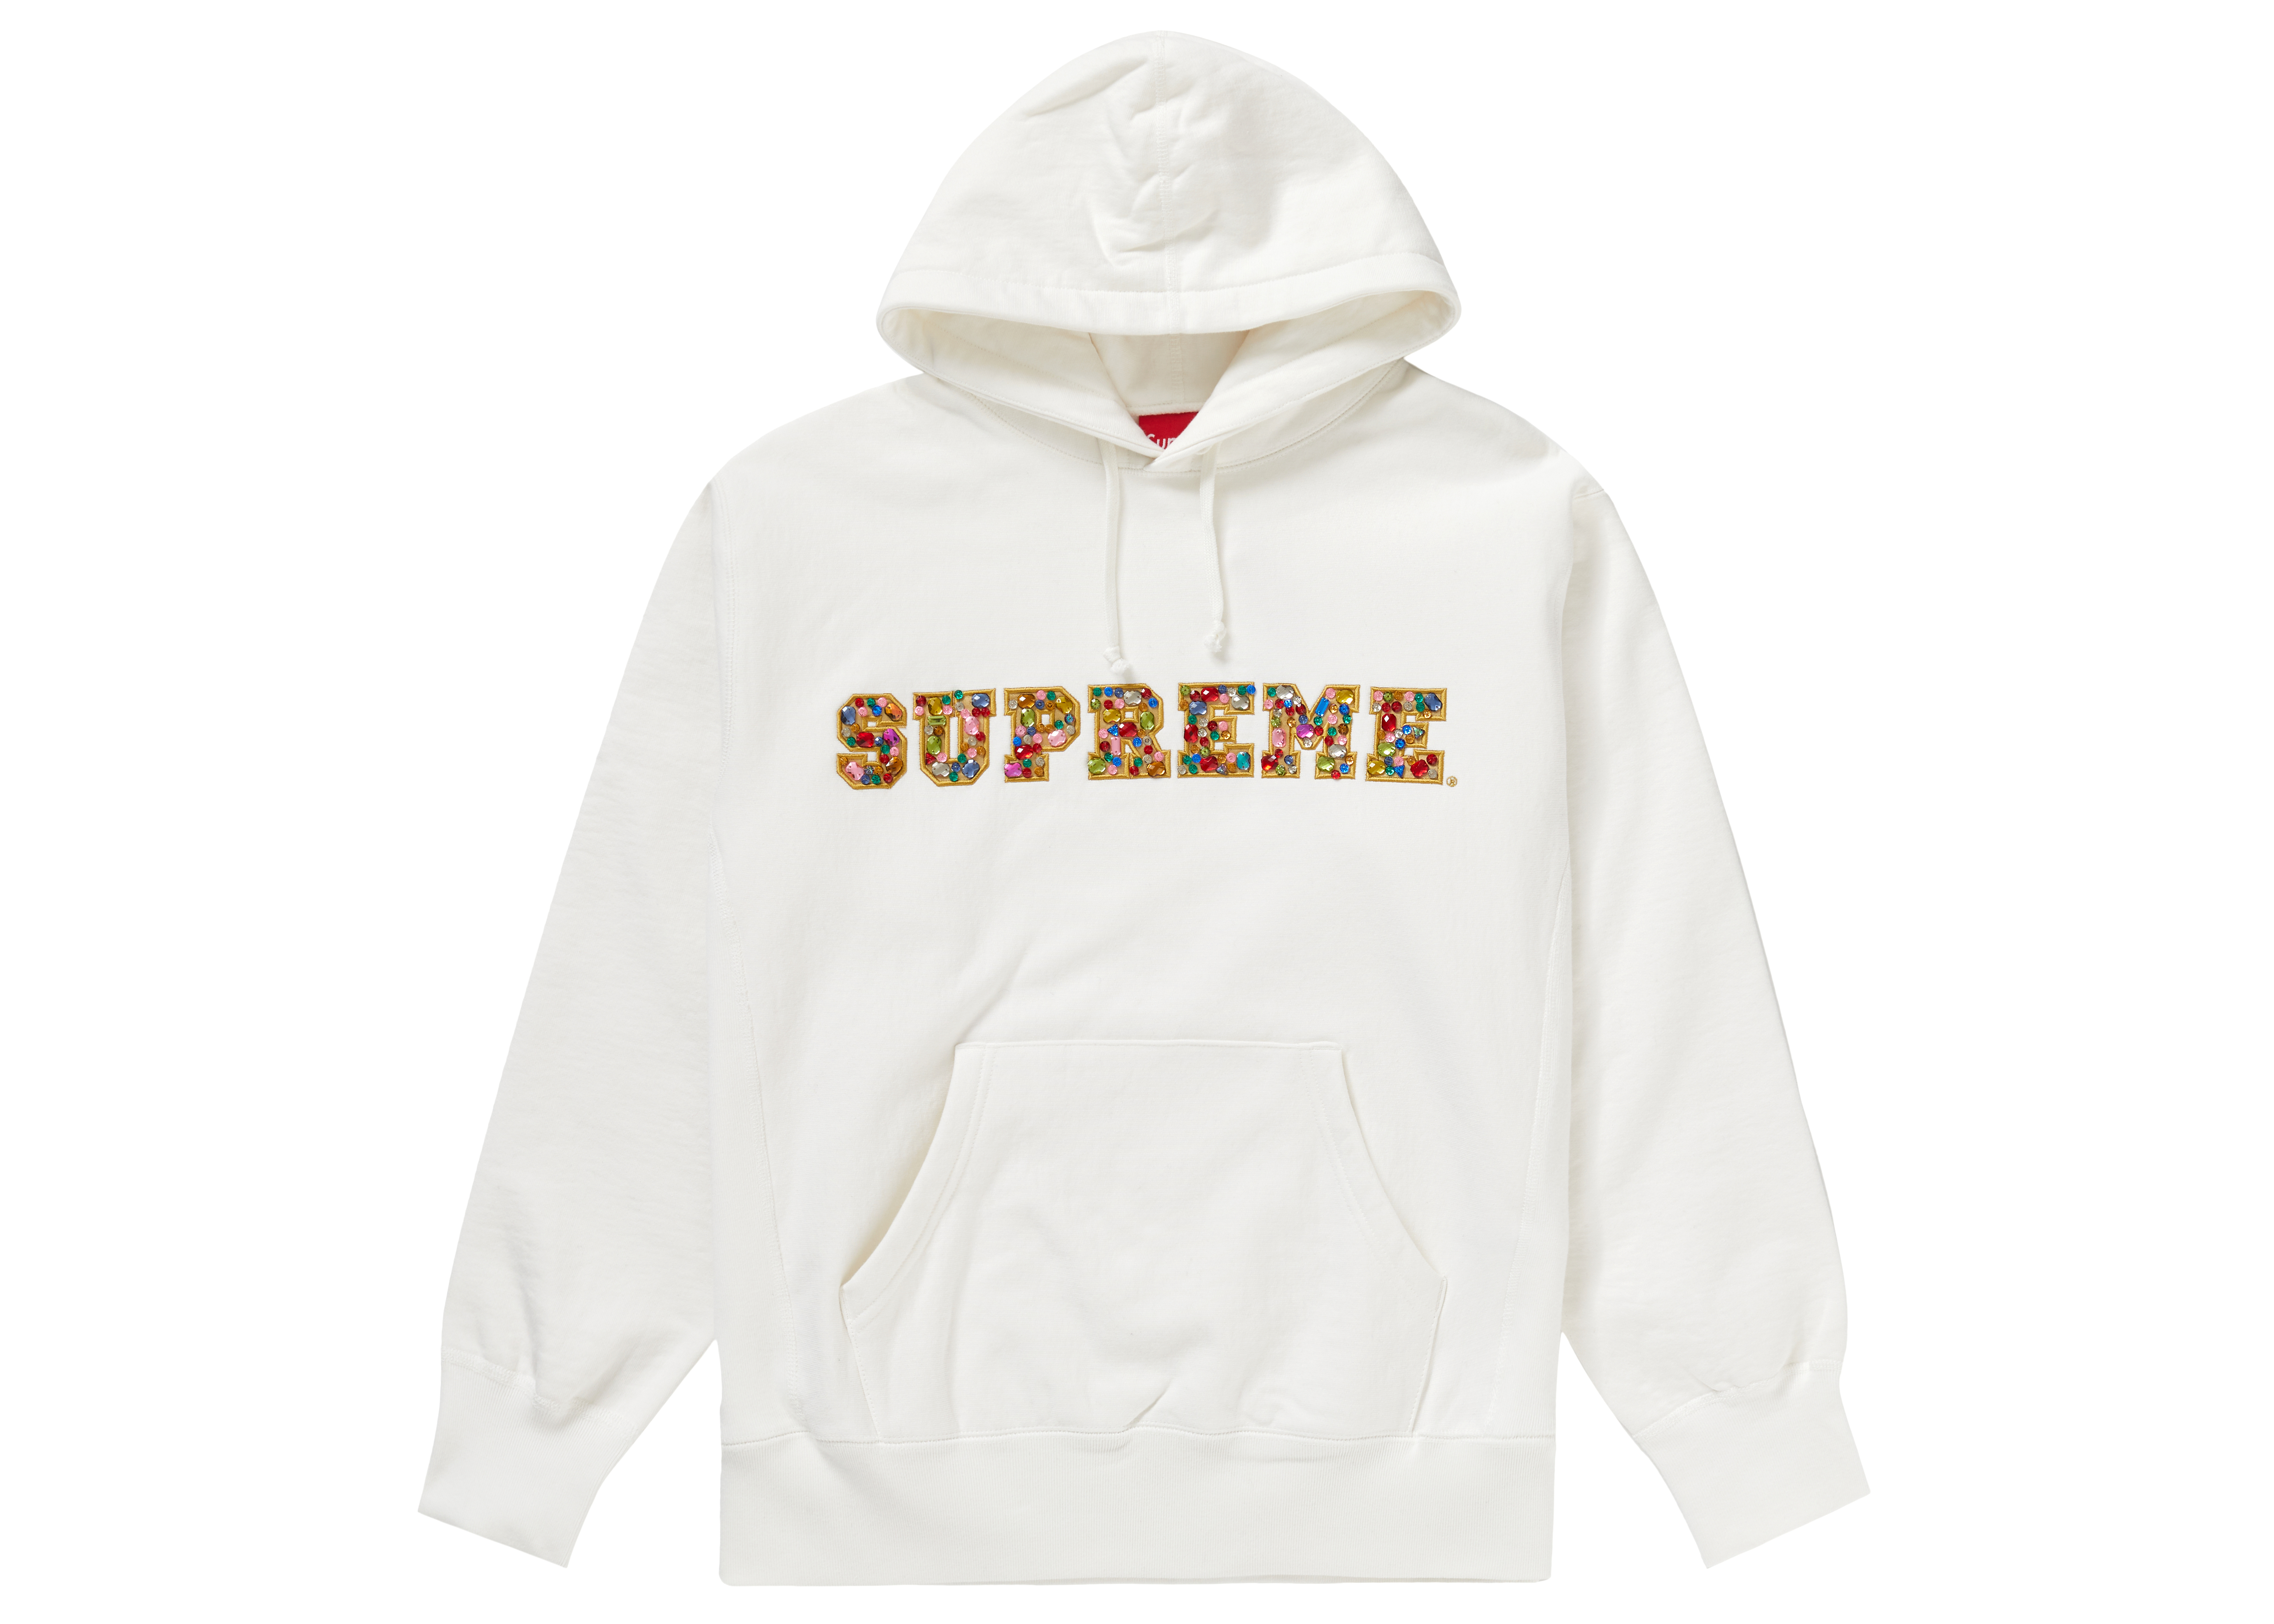  海外ブランド  Supreme 2020F/W sweatshir hooded jewels パーカー